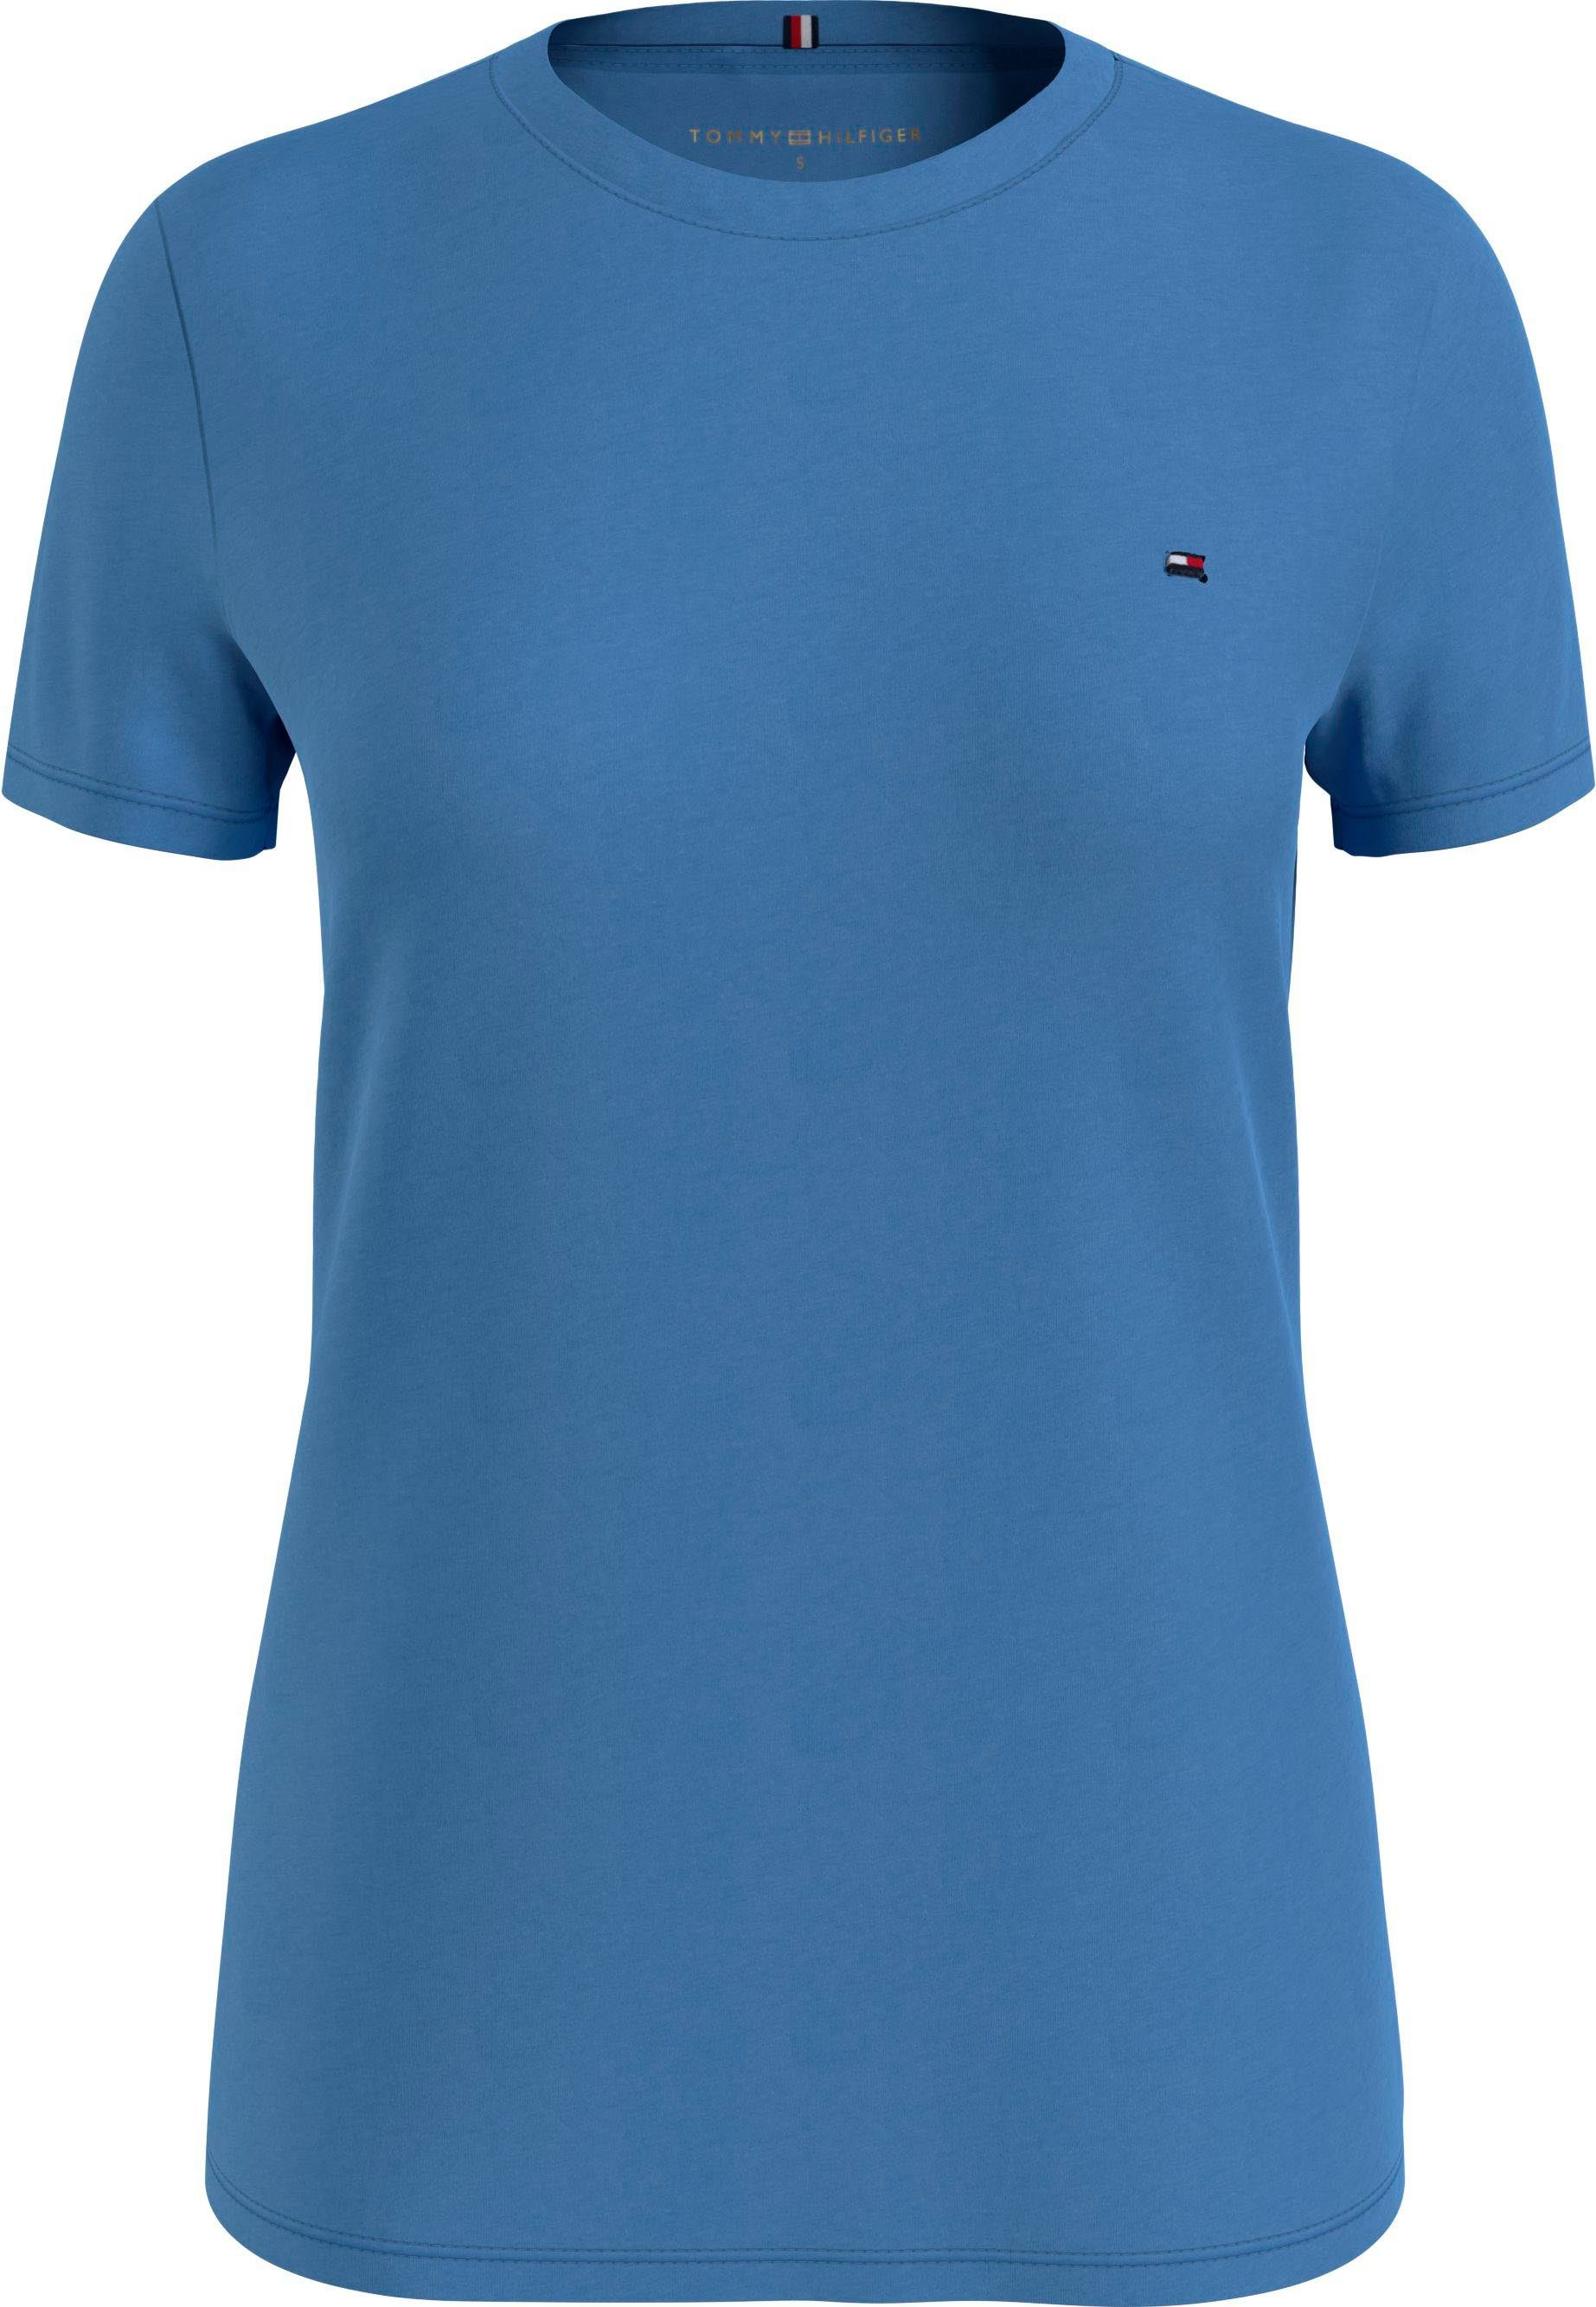 [Weniger als der halbe Preis] Tommy Hilfiger T-Shirt NEW CREW Sky-Cloud Markenlabel Tommy TEE NECK mit Hilfiger